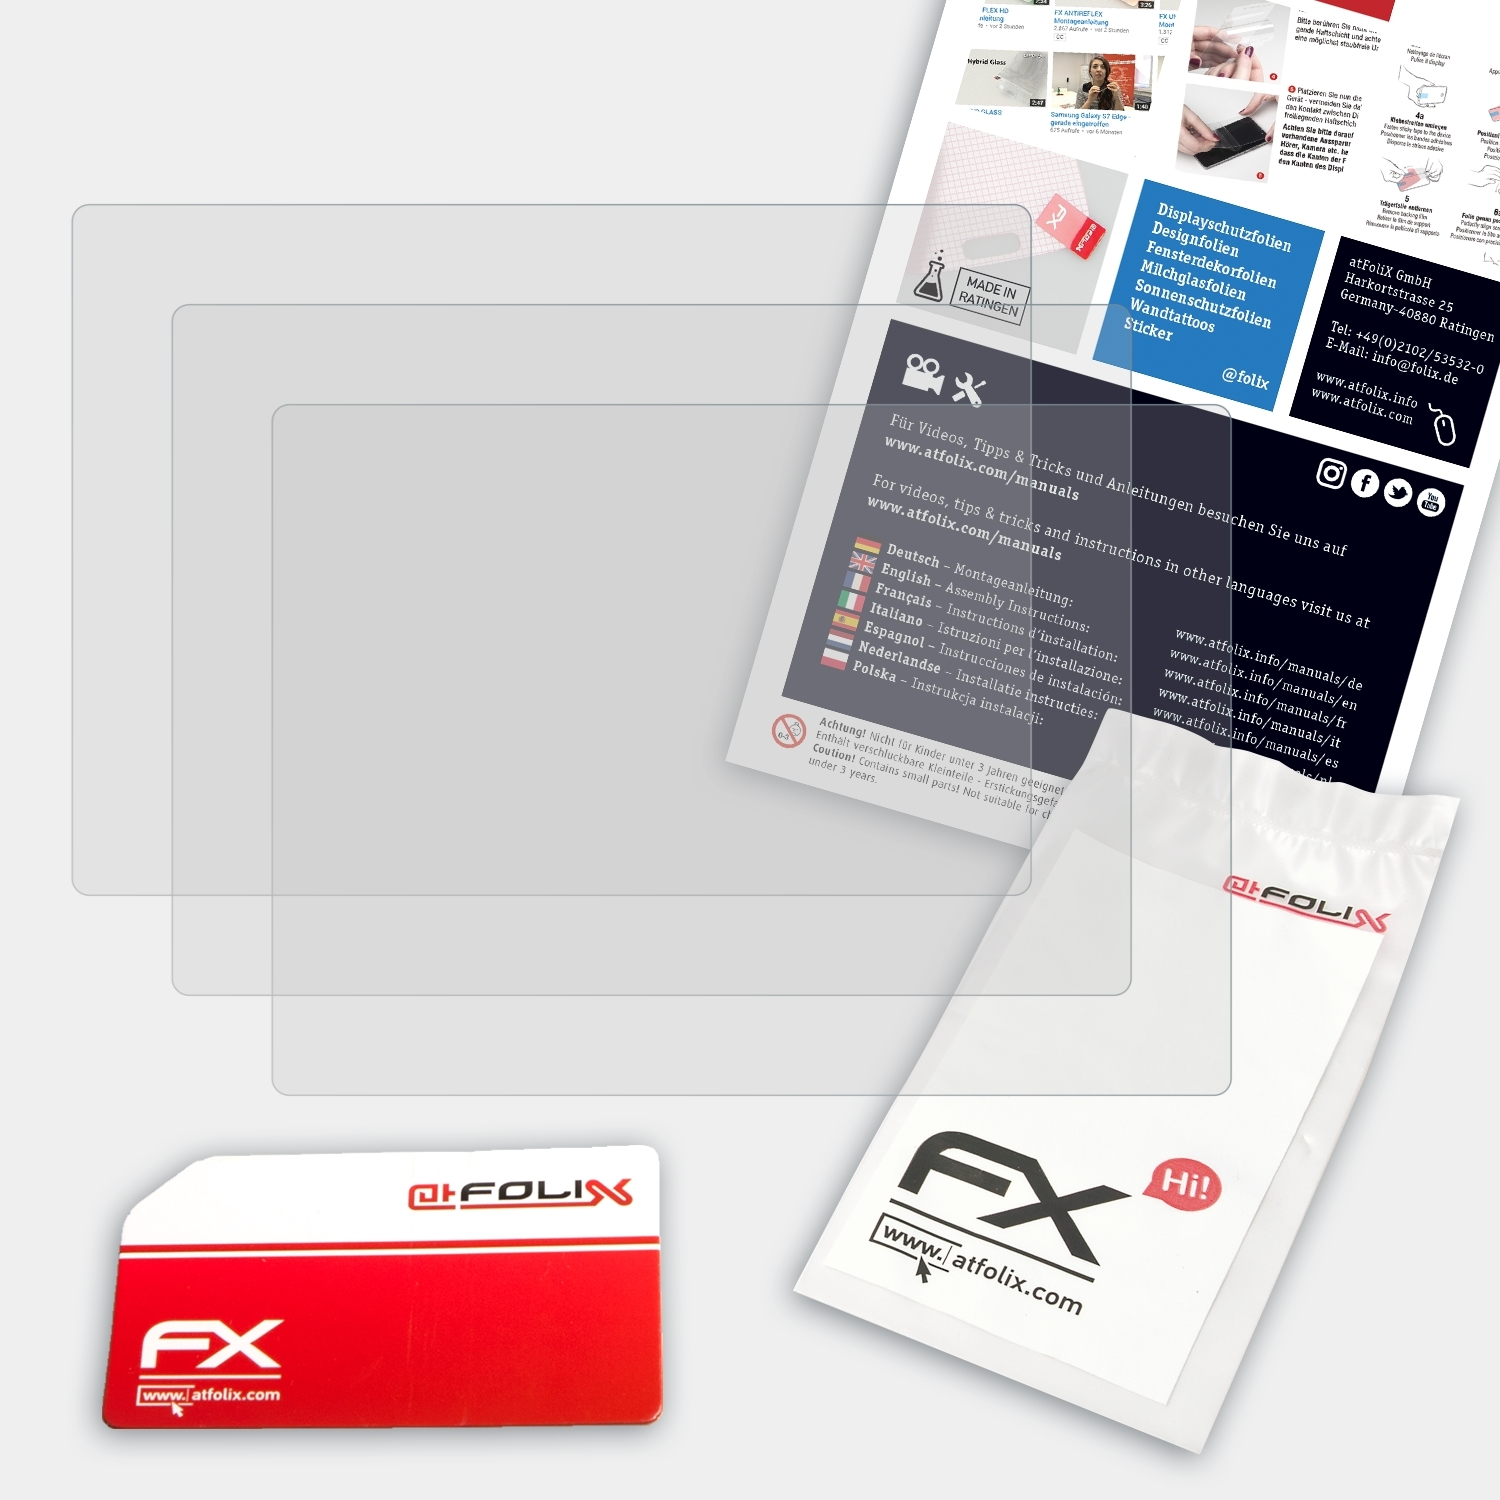 ATFOLIX 3x FX-Antireflex Displayschutz(für Panasonic Lumix DMC-TZ20)